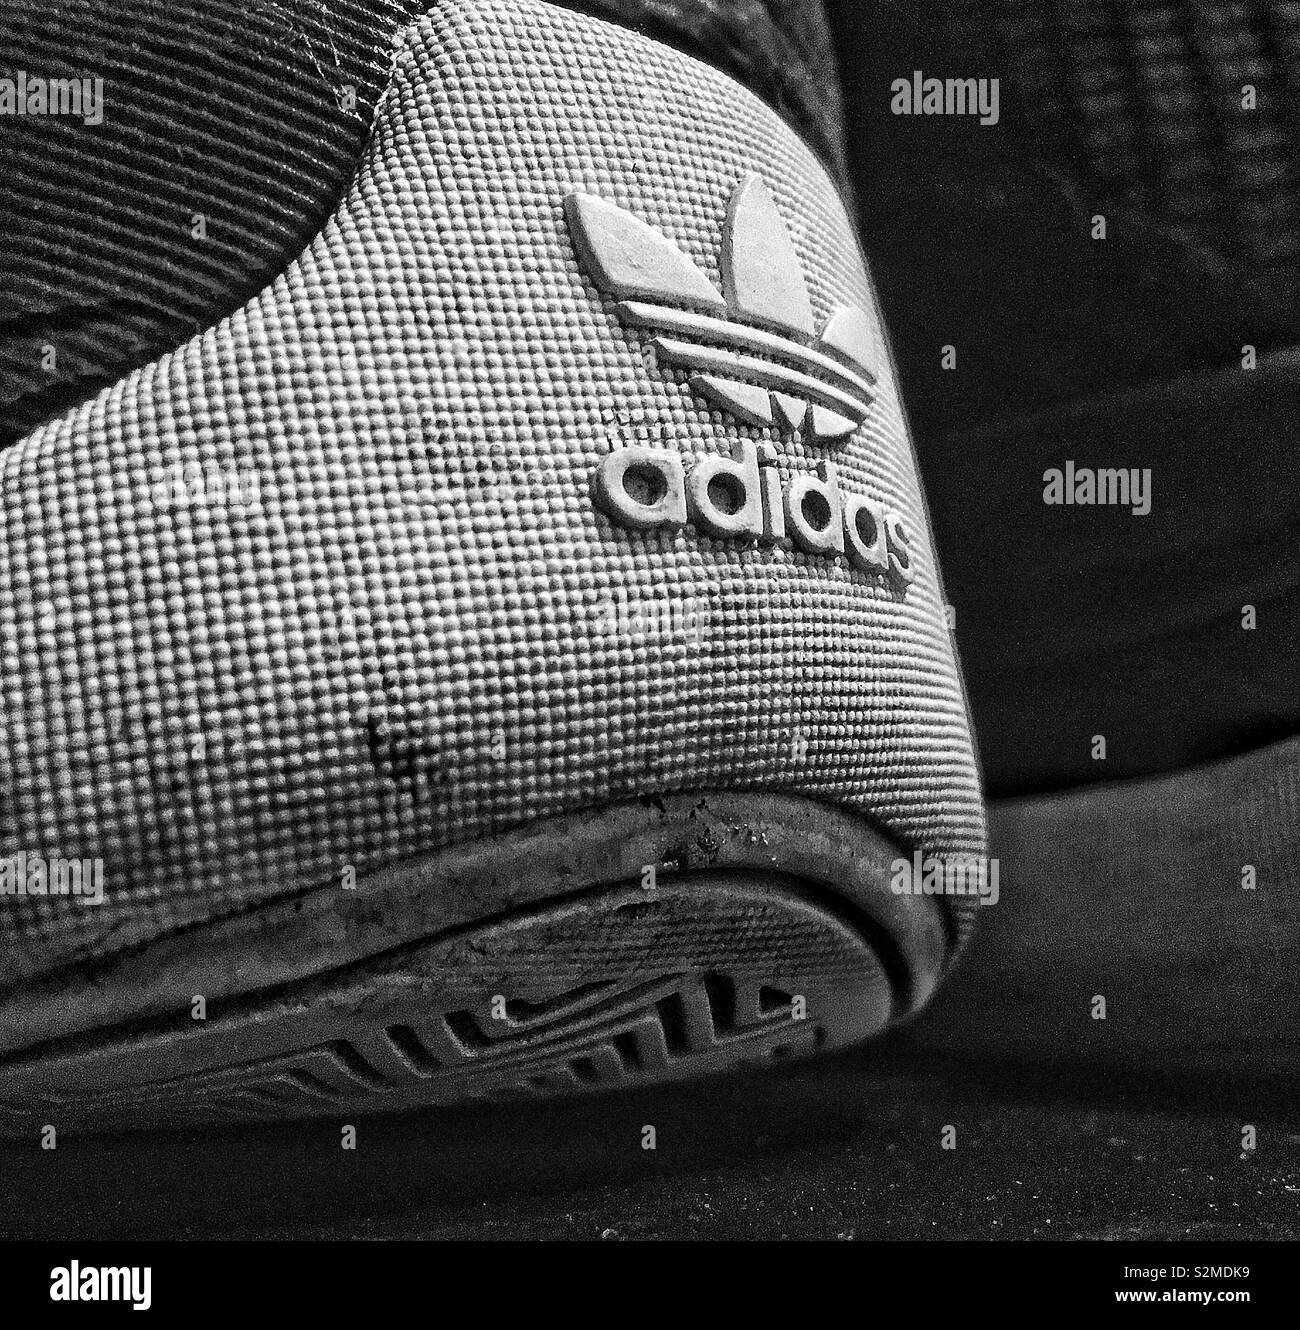 Adidas shoe Banque d'images noir et blanc - Alamy